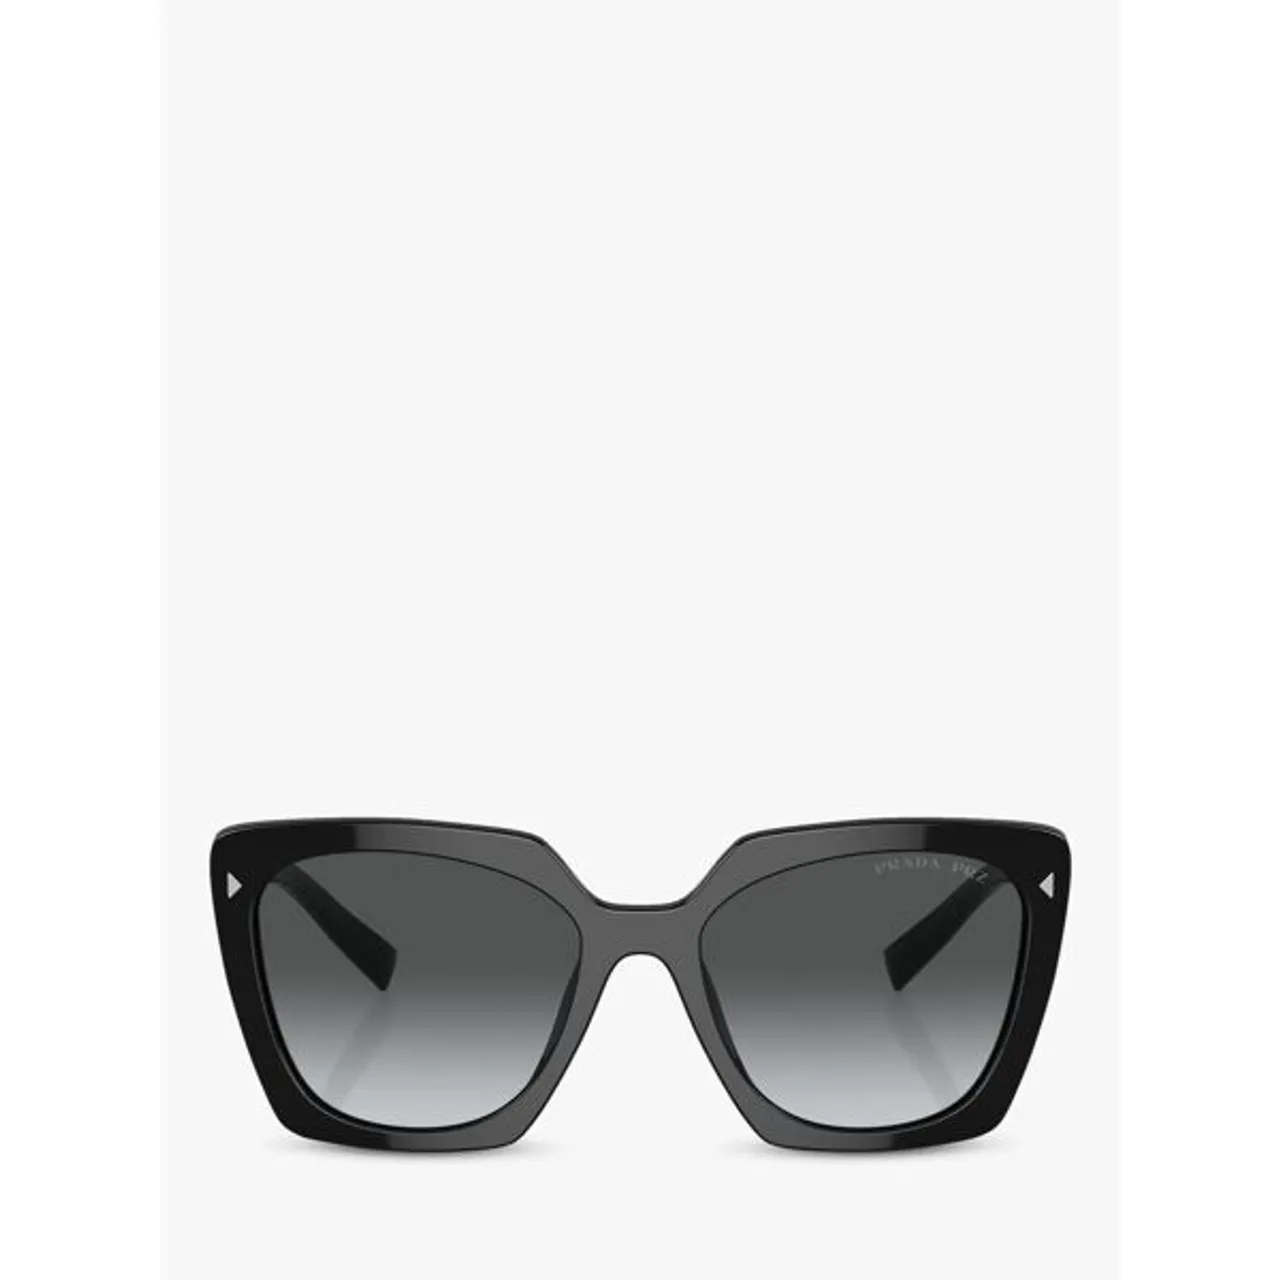 Prada PR 23ZS Women's Polarised Square Sunglasses, Black/Grey Gradient - Black/Grey Gradient - Female